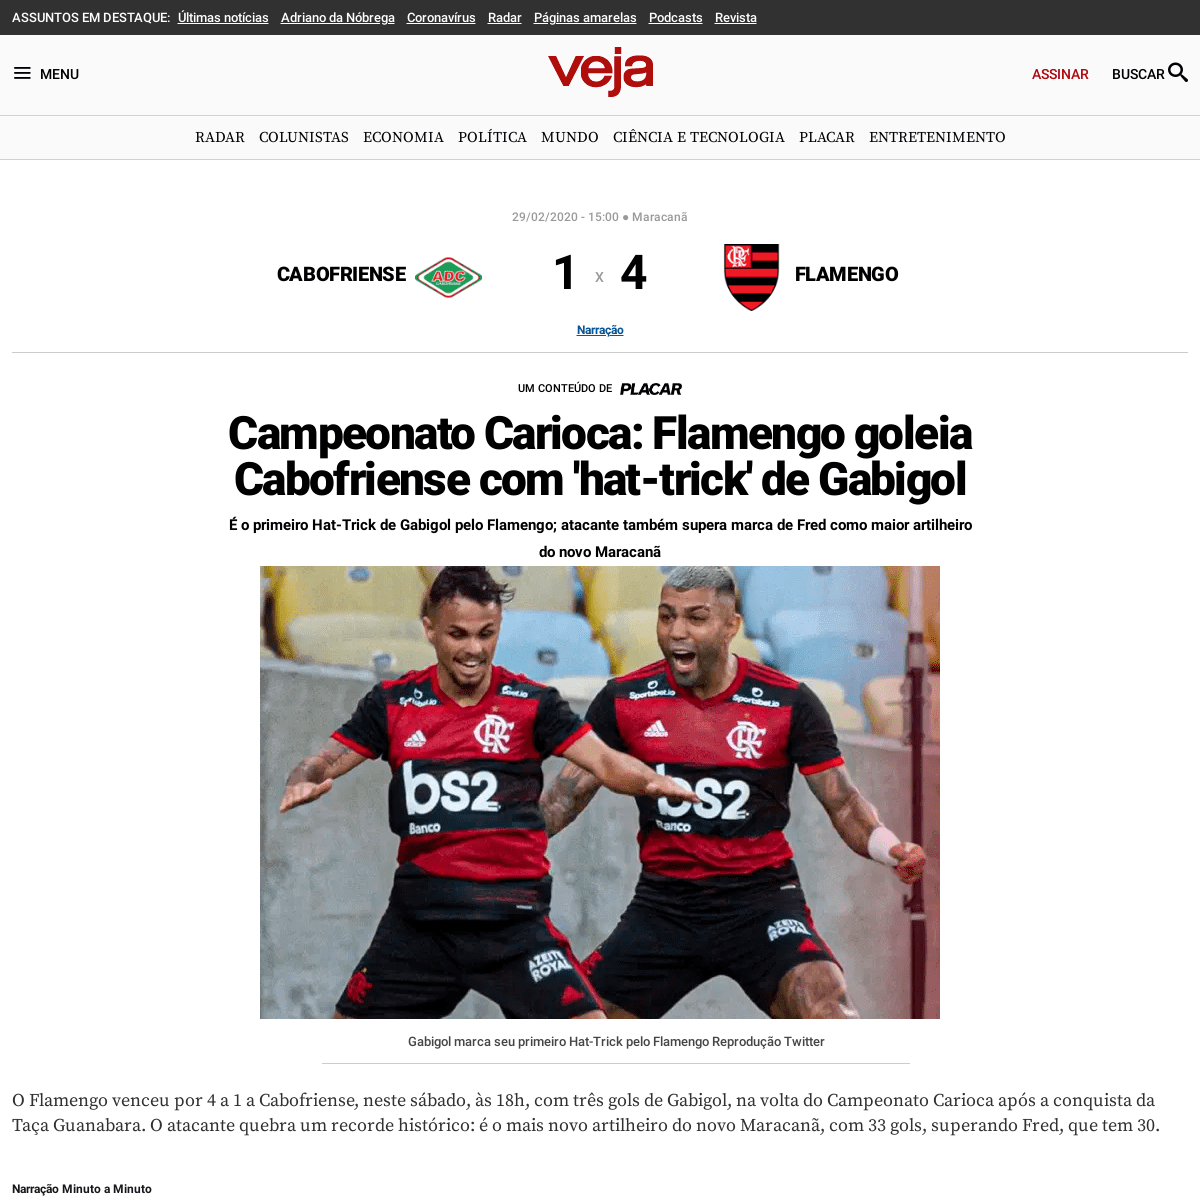 A complete backup of veja.abril.com.br/placar/campeonato-carioca/cabofriense-e-flamengo-29022020/